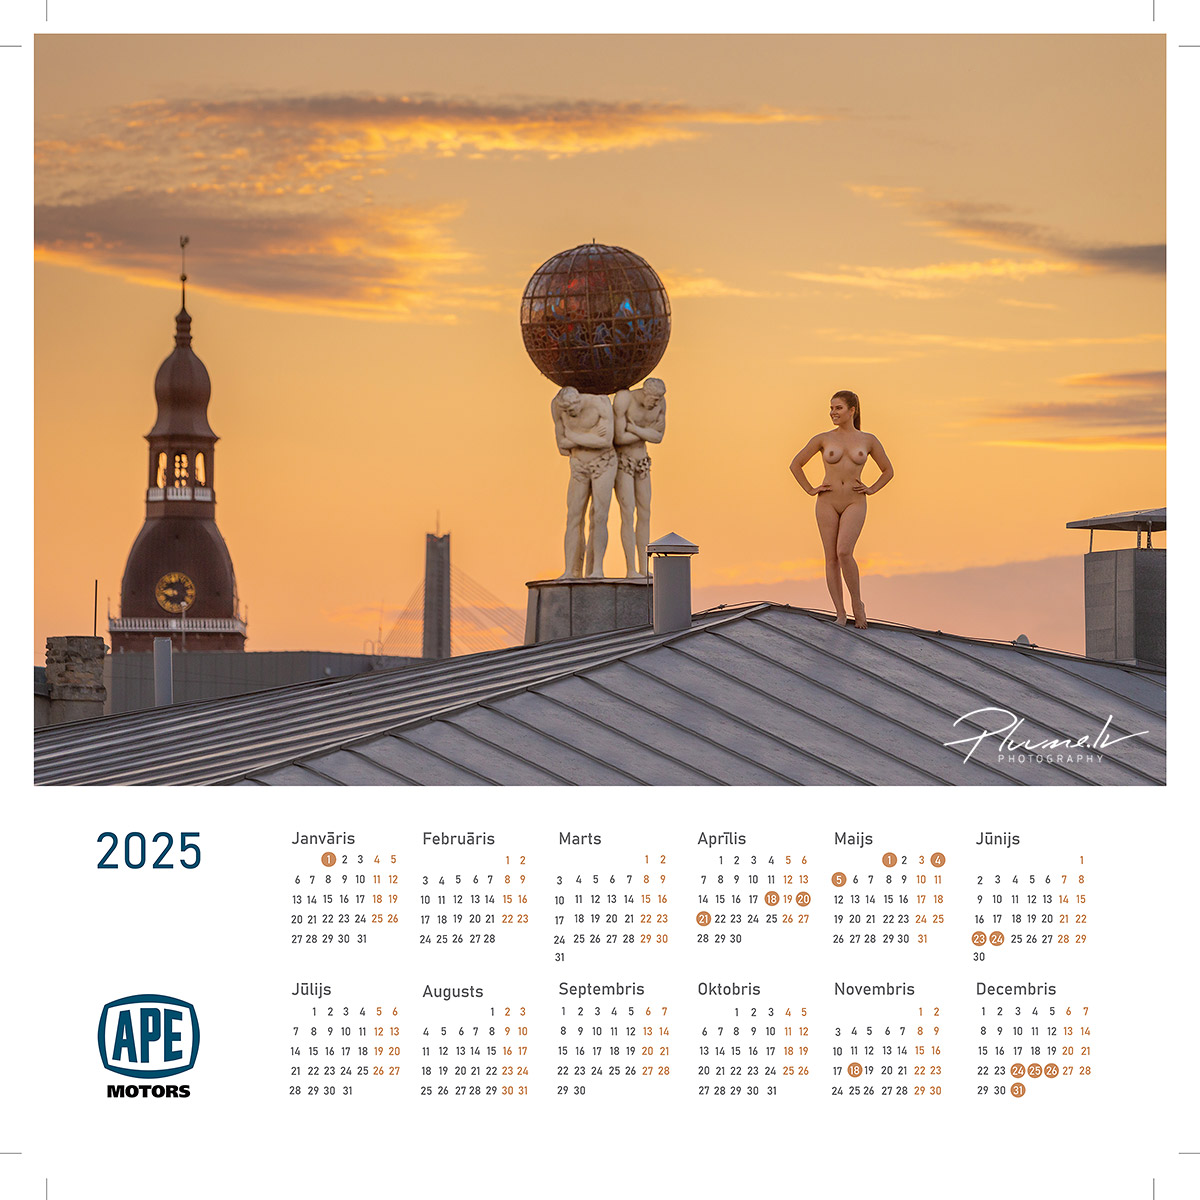 Mārtiņš Plūme | Erotisks kailfoto mākslas kalendārs 2024 gadam, APE Motors | Kailfoto kalendars erotisks kalendars fotografs Martins Plume APE Motors 15